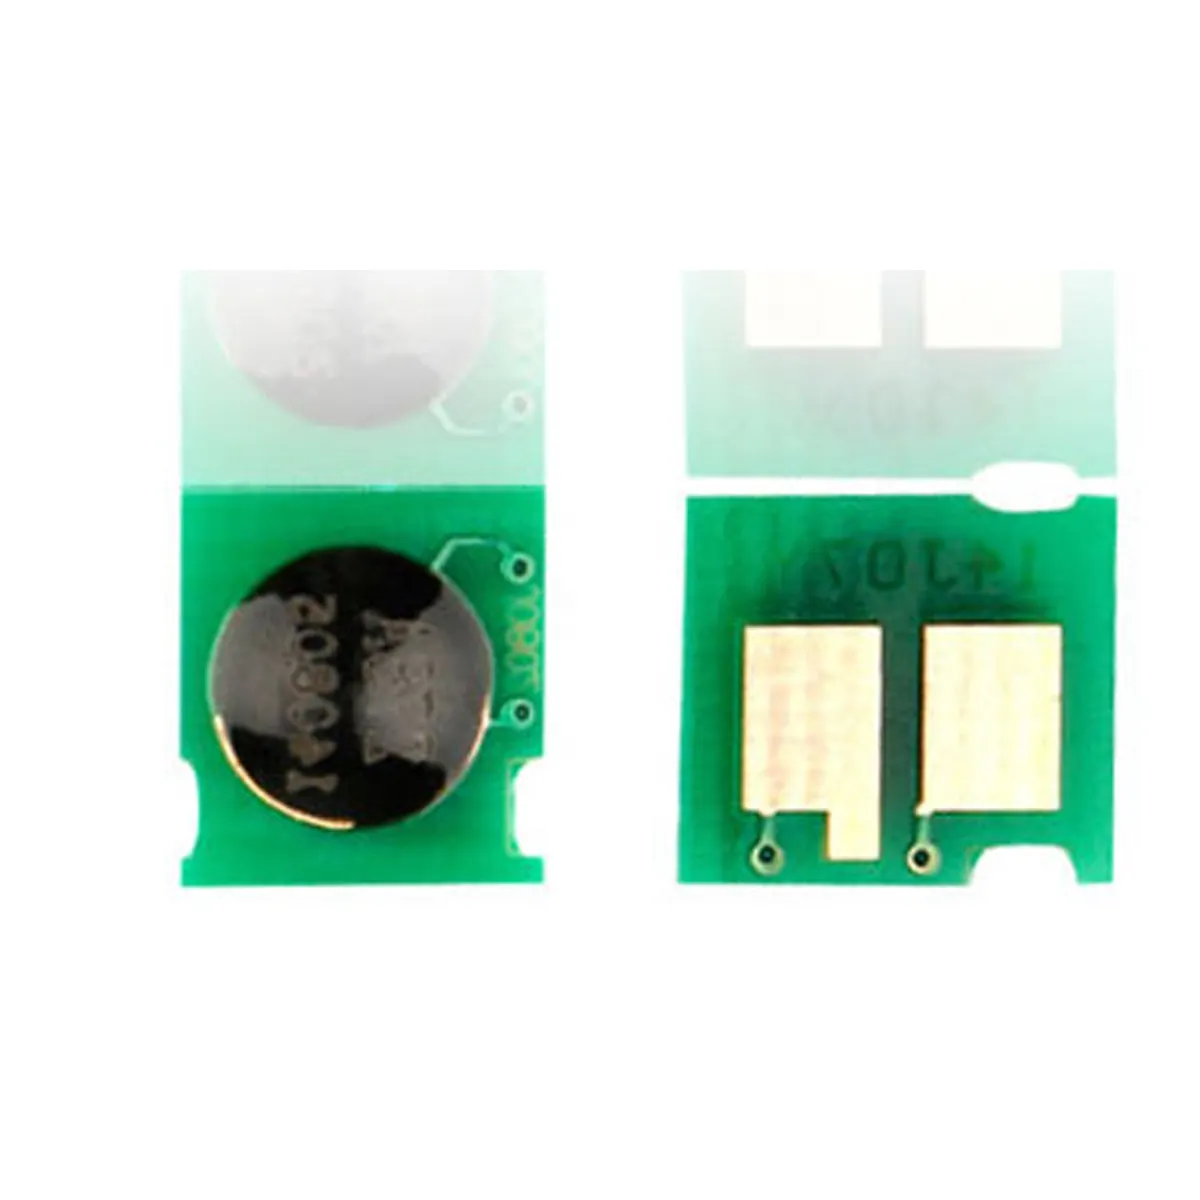 (NPC-UH1215-2025) universeller Toner kartuschen chip für Canon lbp5050 lbp8050 lbp-5050 lbp-8050 lbp 5050 8050 hp1